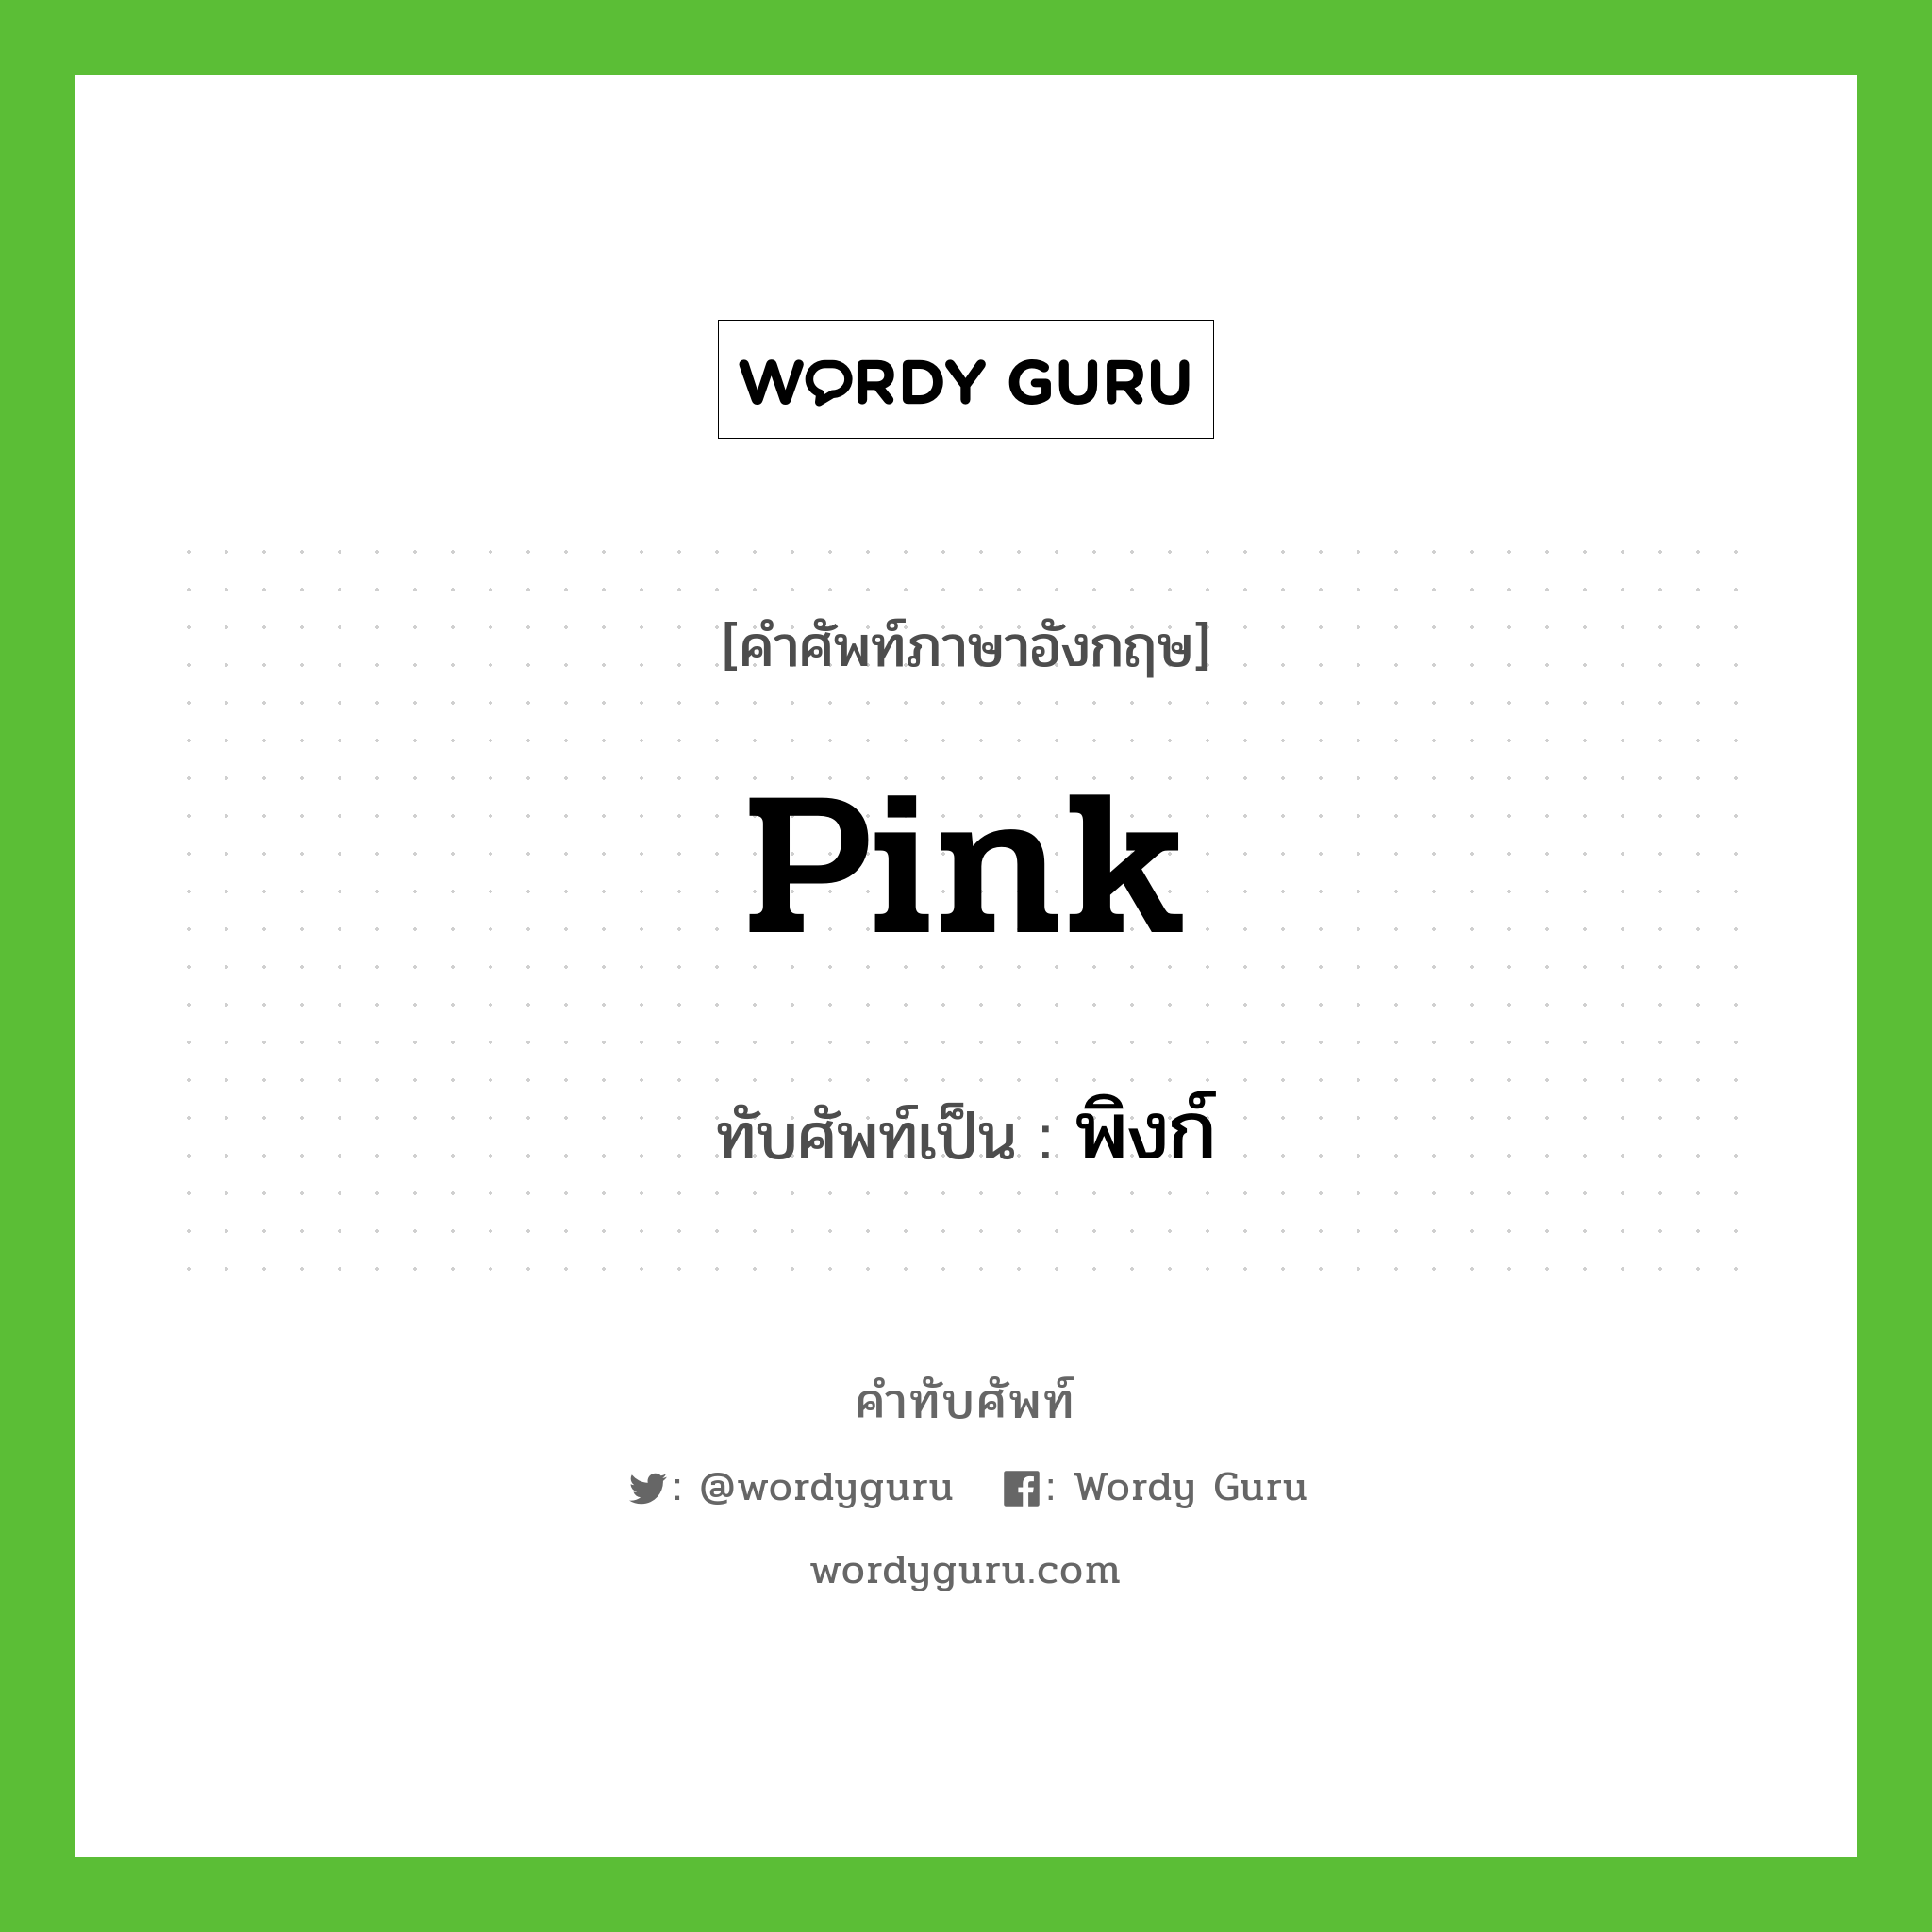 pink เขียนเป็นคำไทยว่าอะไร?, คำศัพท์ภาษาอังกฤษ pink ทับศัพท์เป็น พิงก์